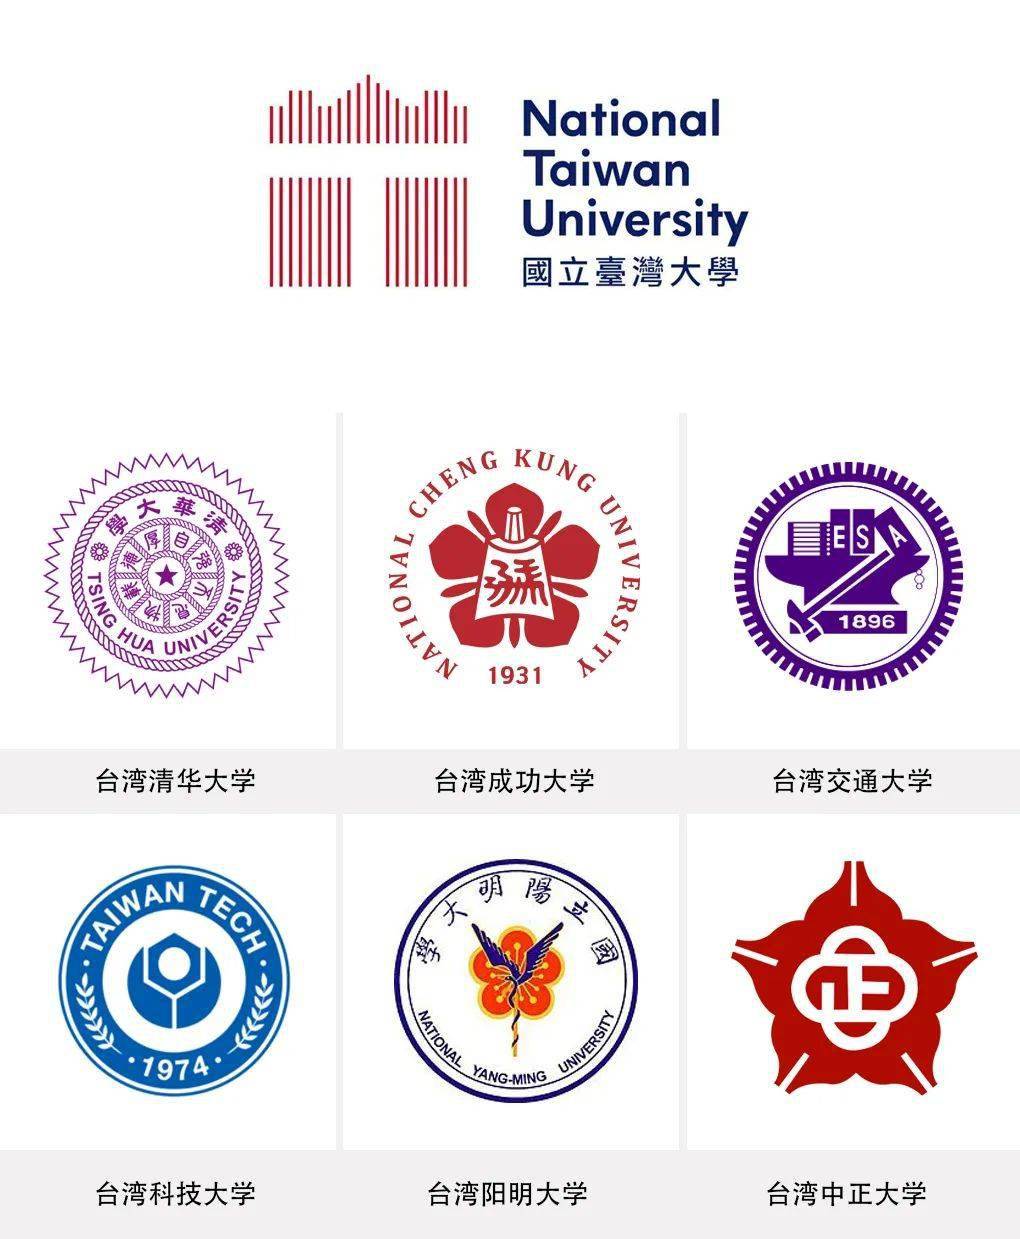 台湾大学启用新更现代的logo